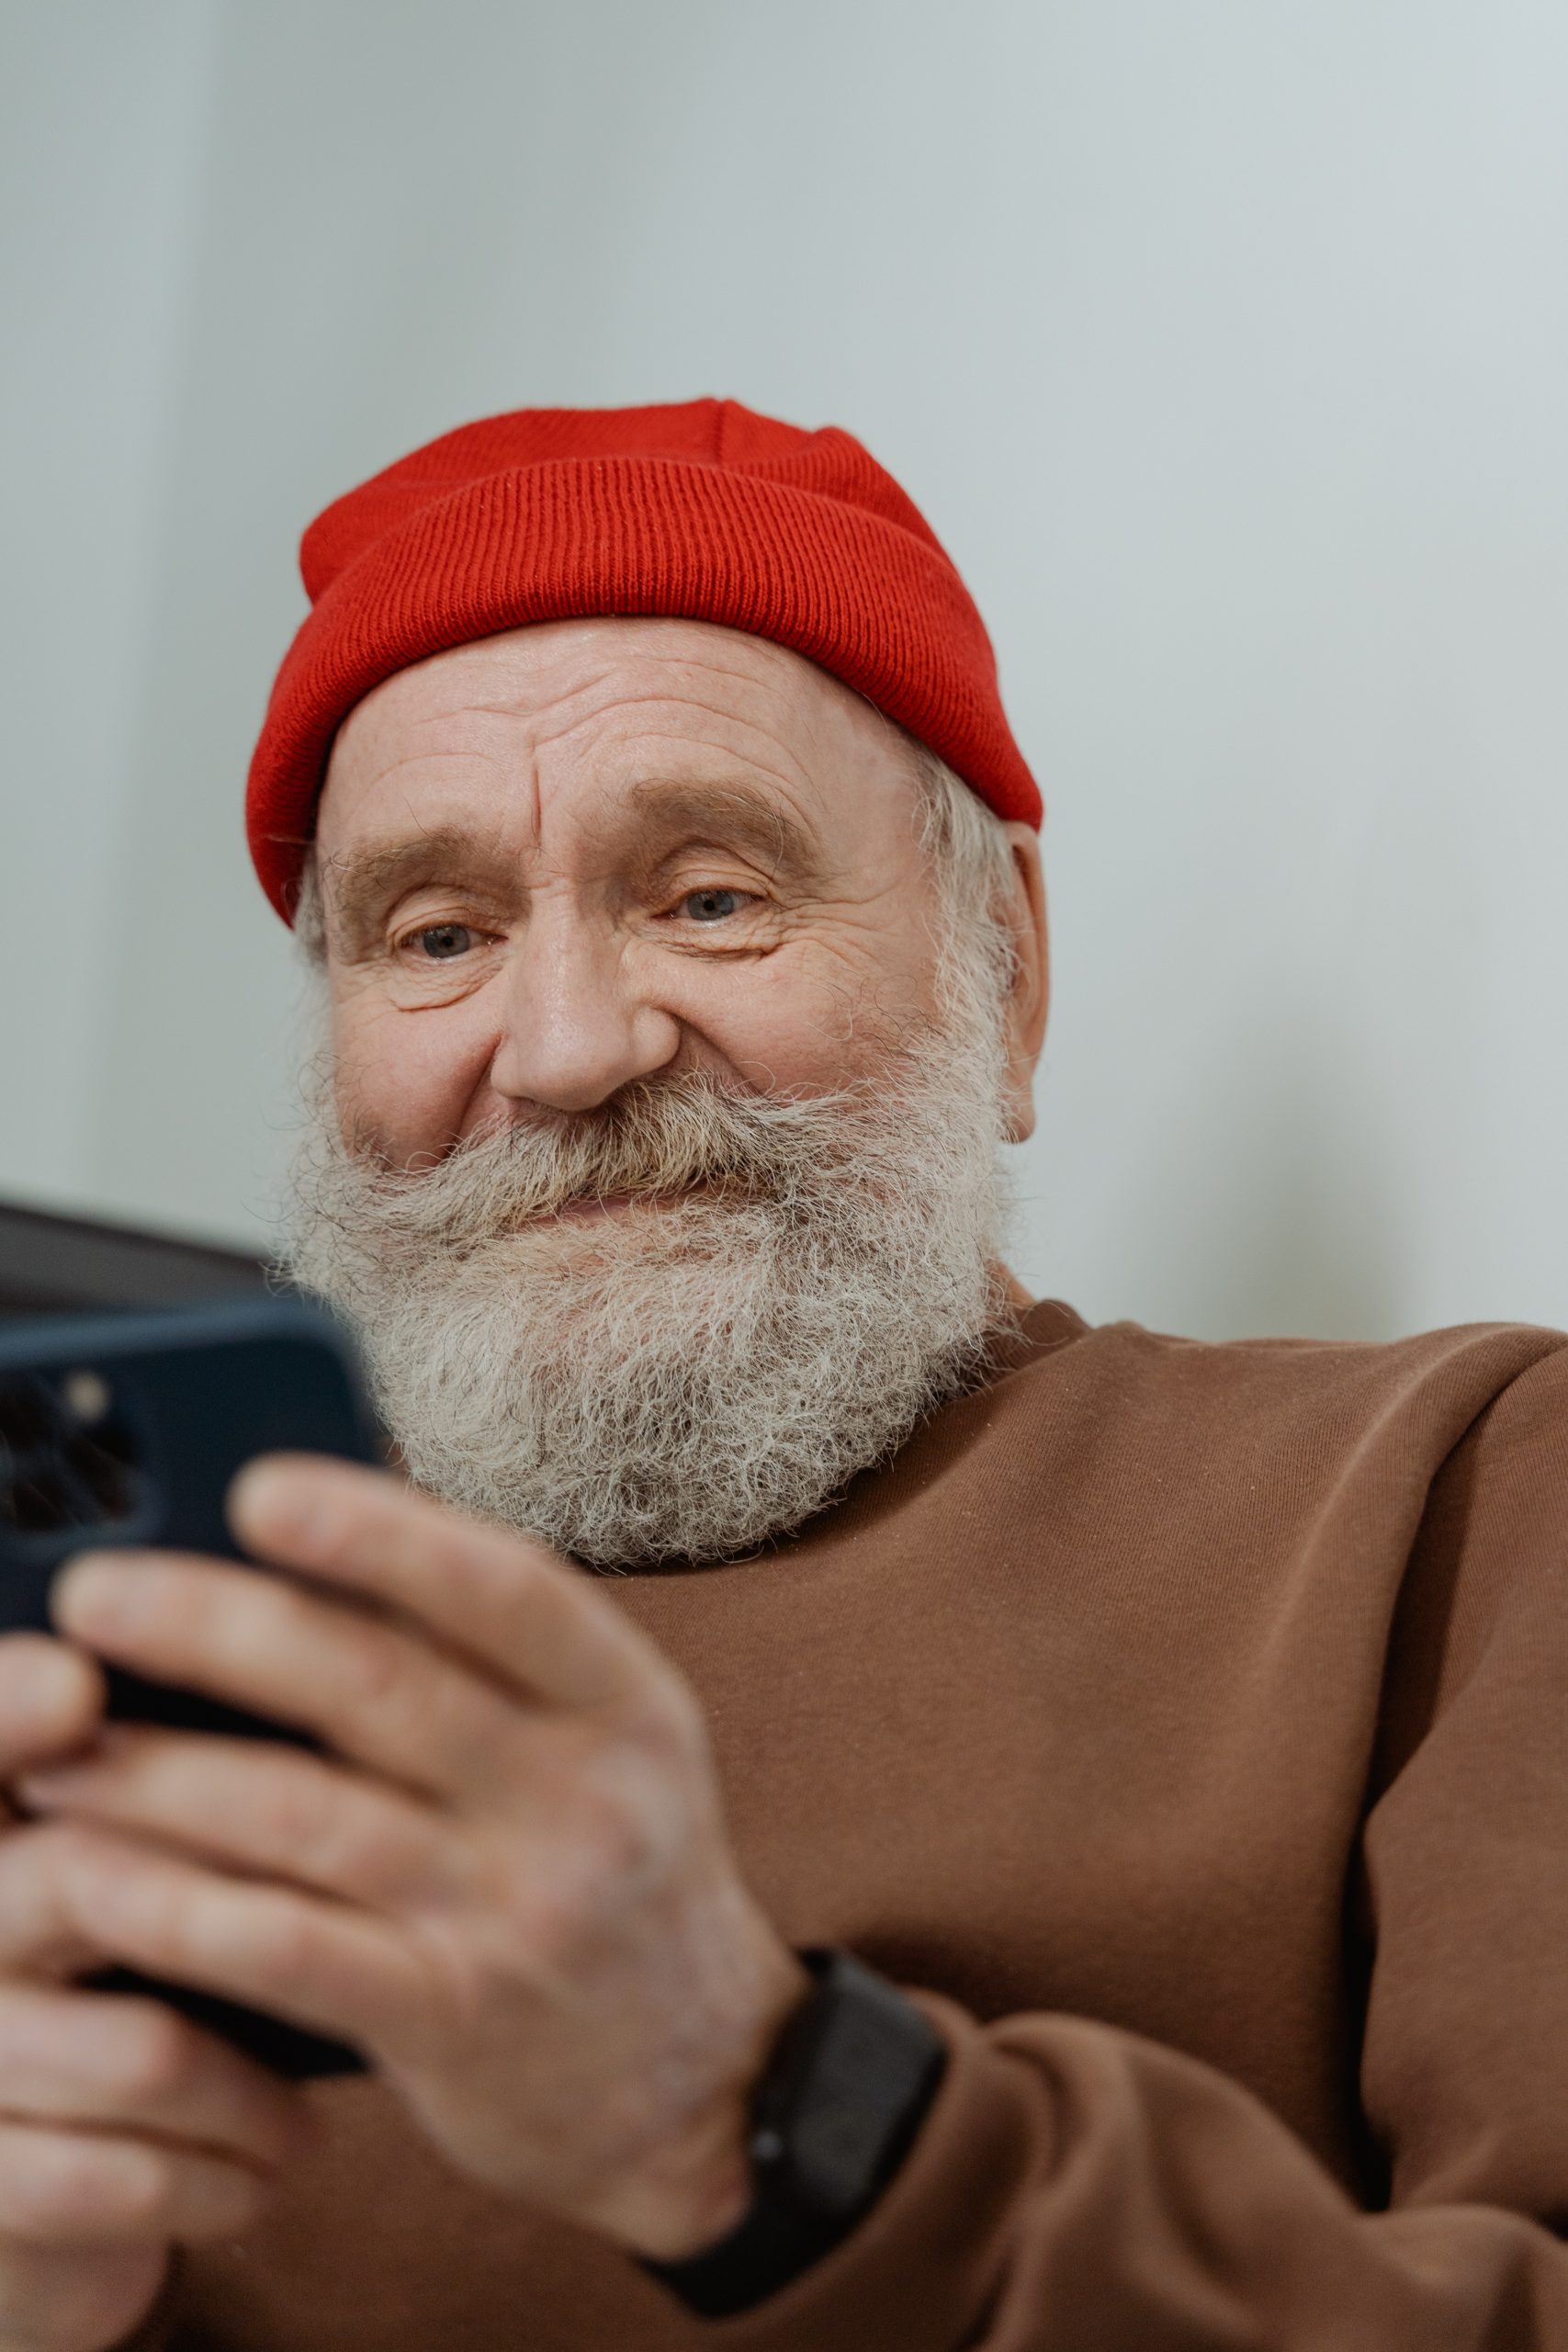 Ein älterer Mann mit einem roten Hut und einem freundlichen Lächeln benutzt ein Smartphone, was zeigt, dass die moderne Altersvorsorge auch digitale Kompetenzen für das Management von Vorsorgekonten und Investitionen im Ruhestand umfasst.